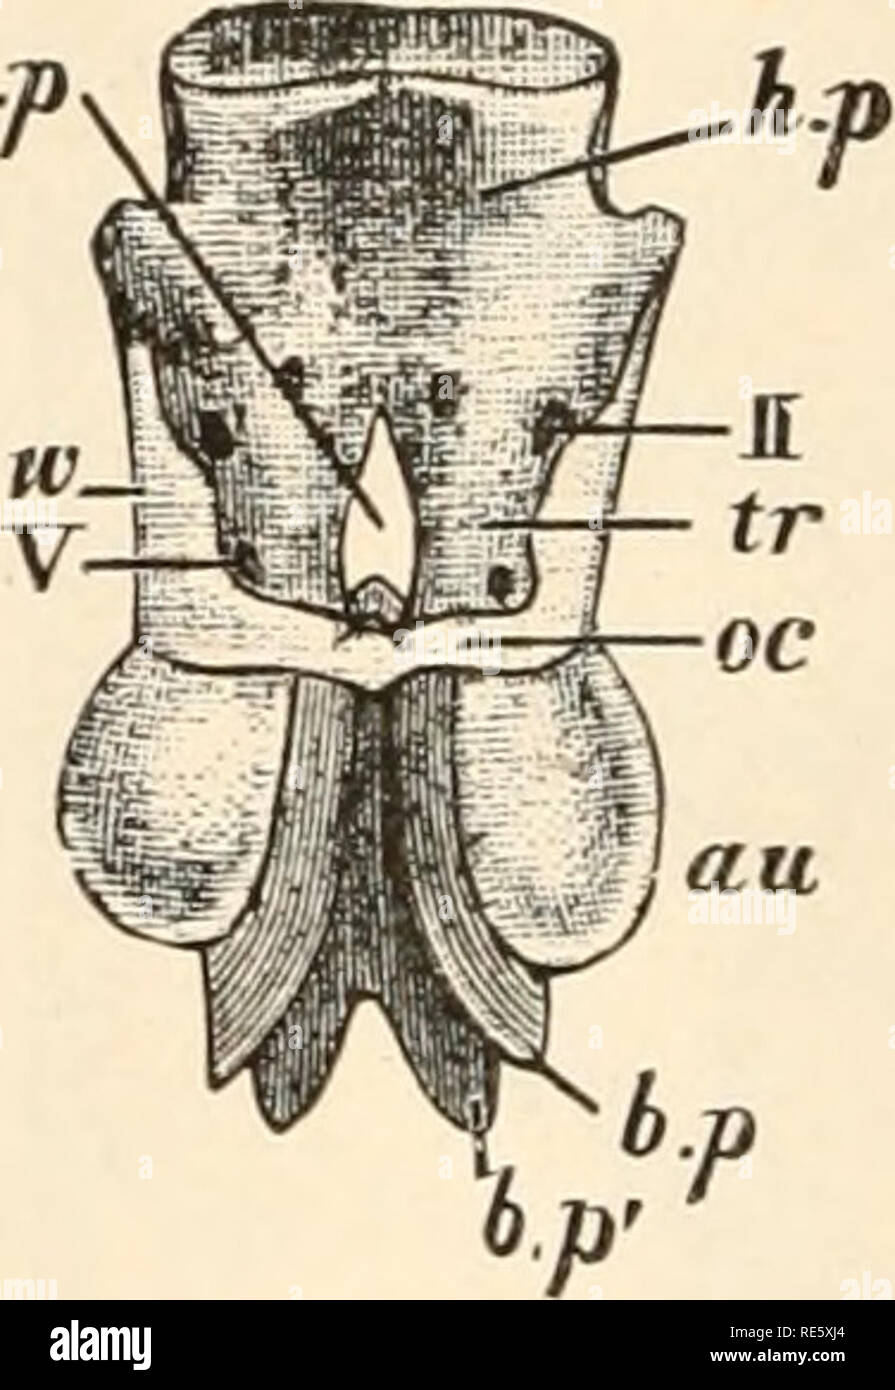 . Un cours d'instruction en zootomy (vertébrés). Anatomie, comparatif. 4 ZOOTOMY. 3. La fin des rayons x (Fig. 7 et 8/r), délicats filaments cartilagineux, soutenant les nageoires dorsale et caudale (articles 29, 30). Ils sont connectés à la face ventrale avec le tissu fibreux couvrir dans le canal neural, et sont parallèles l'un à l'autre et incliné vers l'arrière. 4. Le cerveau-cas, ou division du crâne sauve. En arrière Il se compose d'une plaque basale ou parachordal (figues, i et 2, b.b.pt p'), entourant l'extrémité antérieure de la notochorde, et divisé par le dernier en dorsale (b.p) et ventrale (b.p') portio Banque D'Images